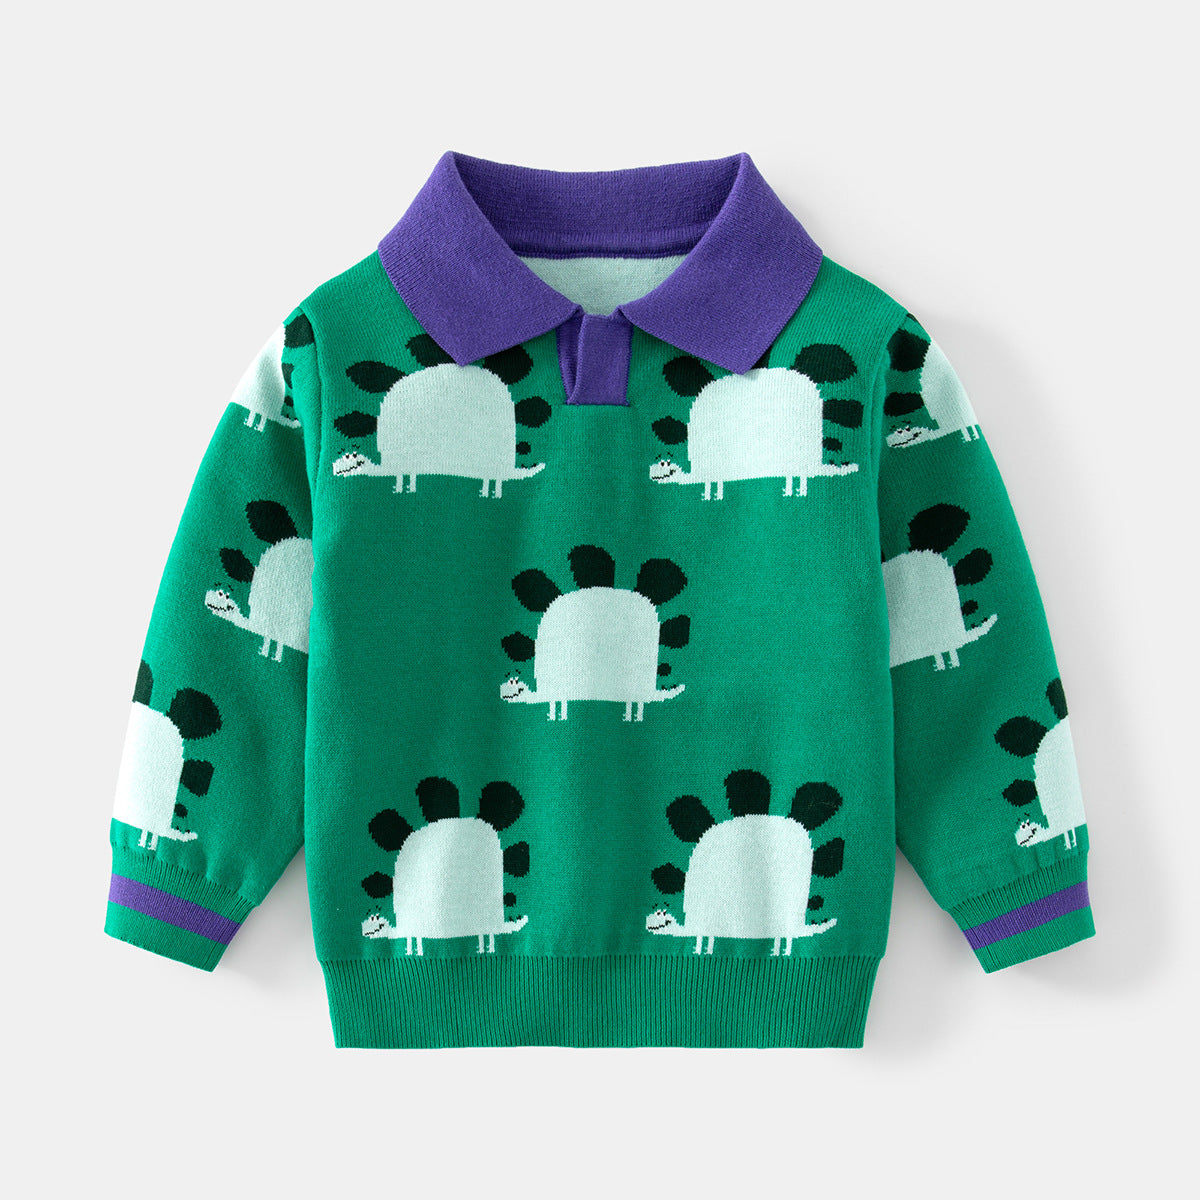 [513649] - Atasan Sweater Polo Kerah Lengan Panjang Import Anak Laki-Laki - Motif Cute Stegosaurus